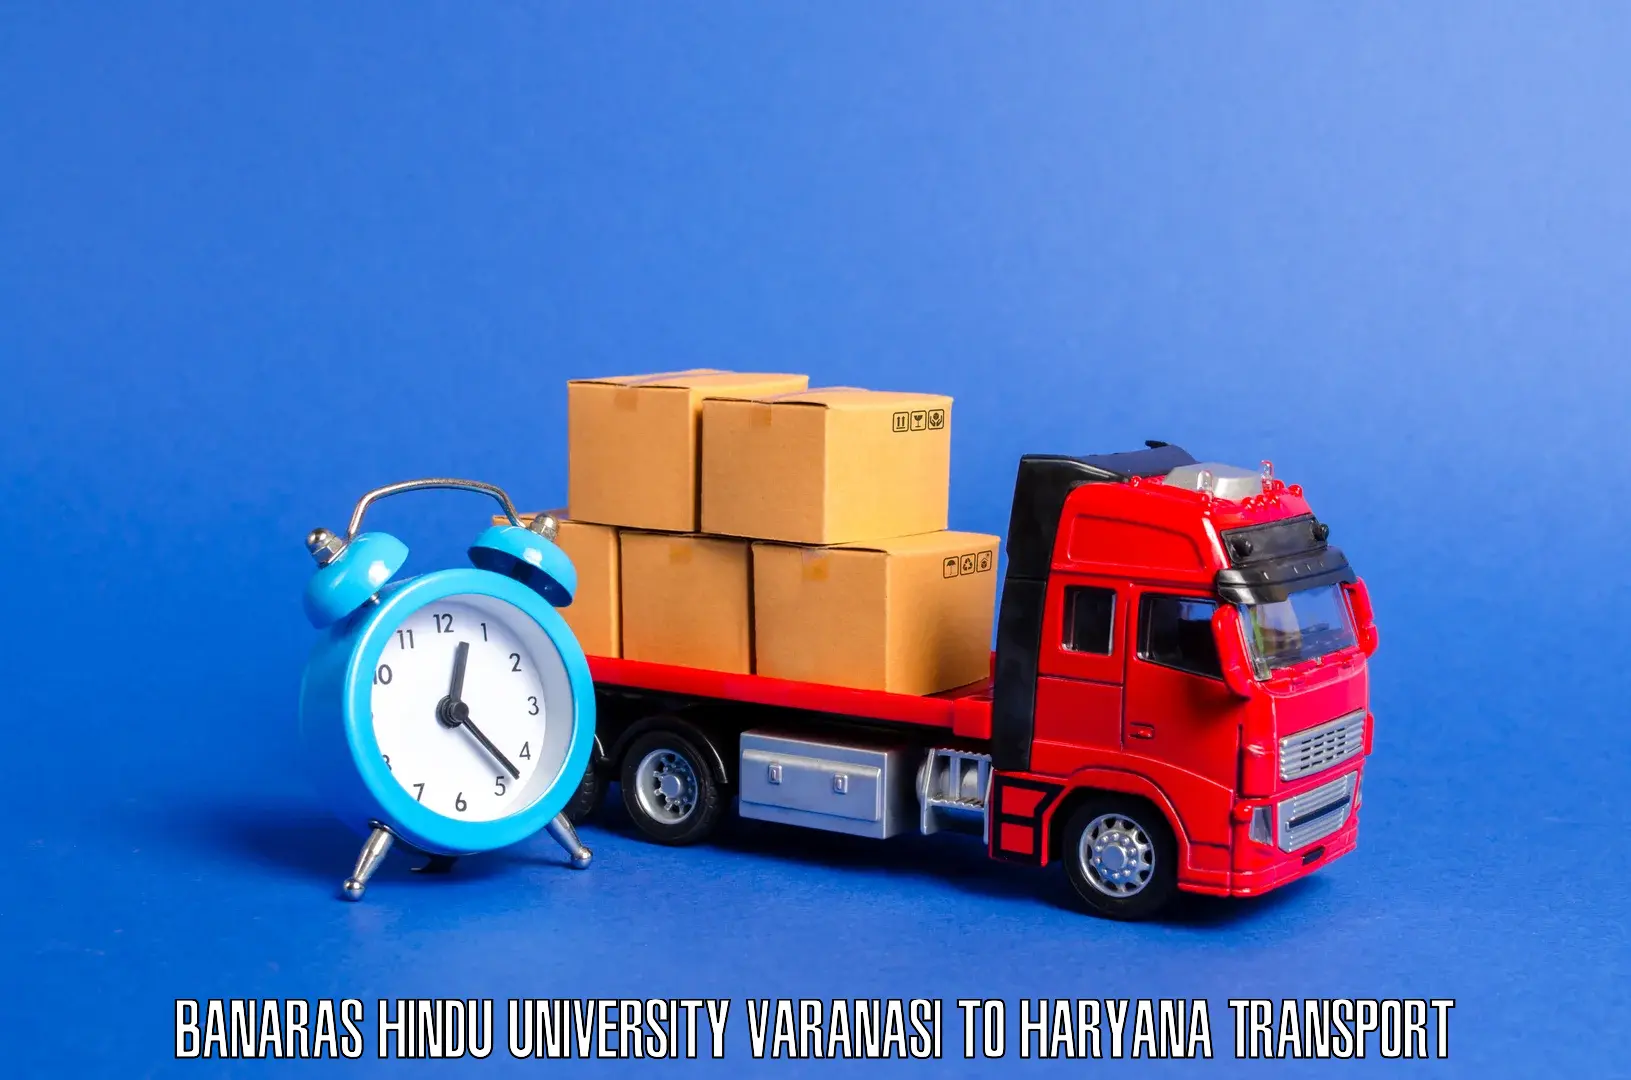 Nearby transport service in Banaras Hindu University Varanasi to Buguda